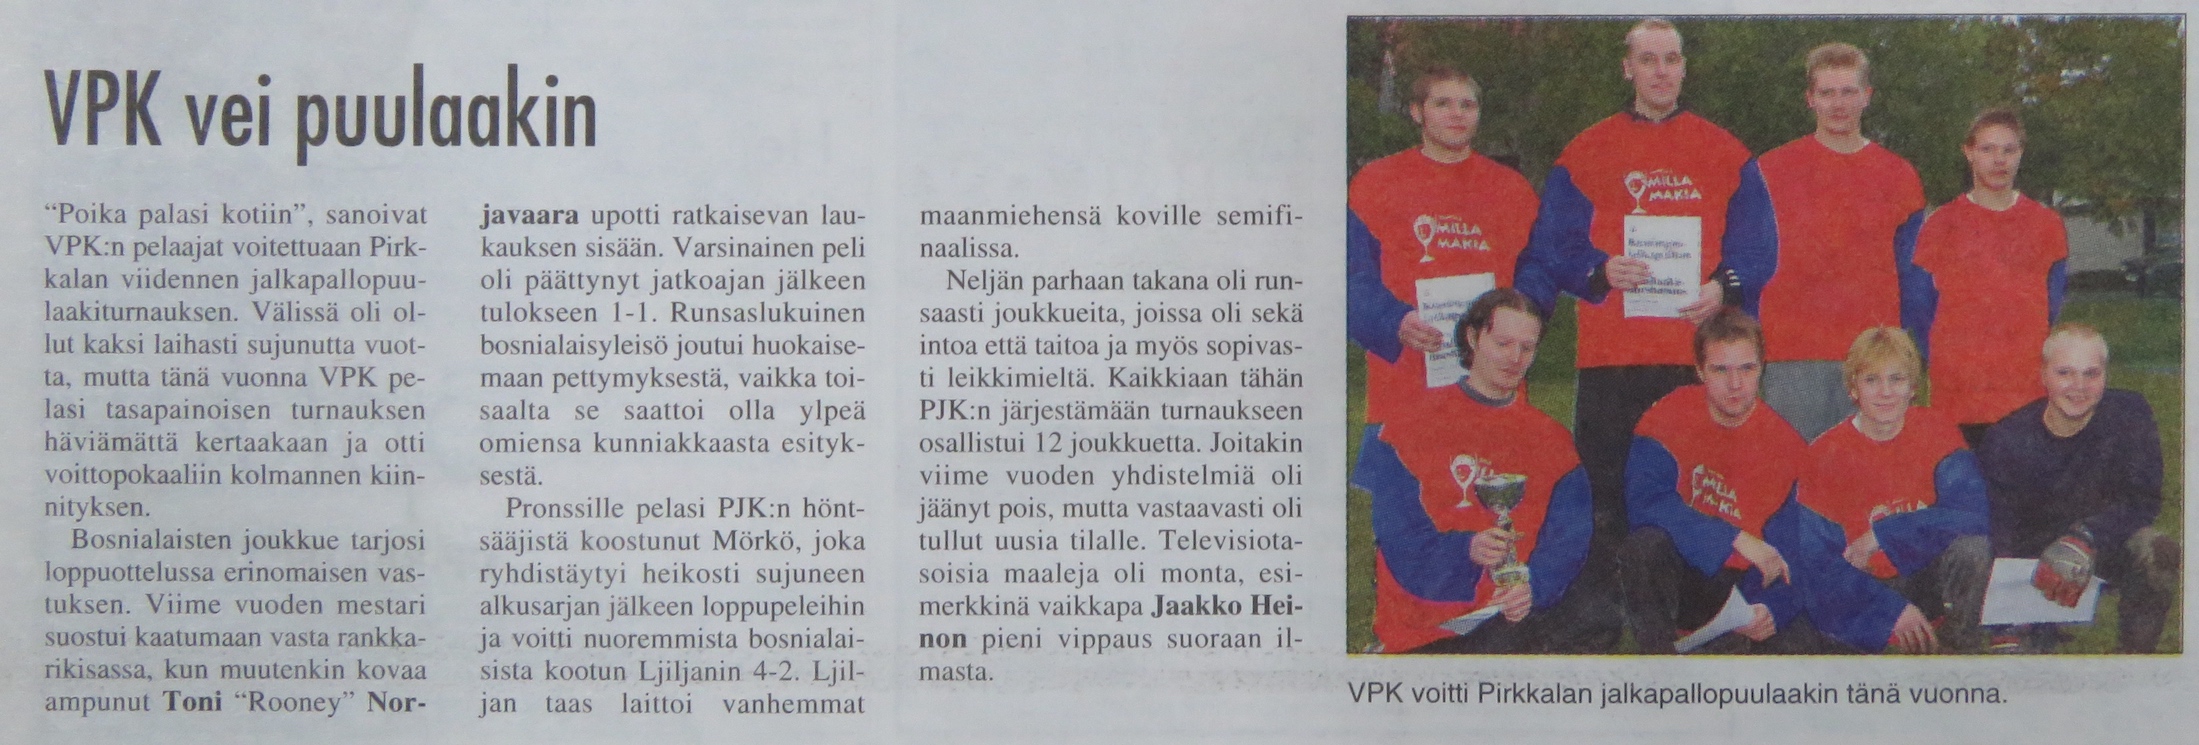 Turnausraportti Pirkkalaisessa 29.09. 2004